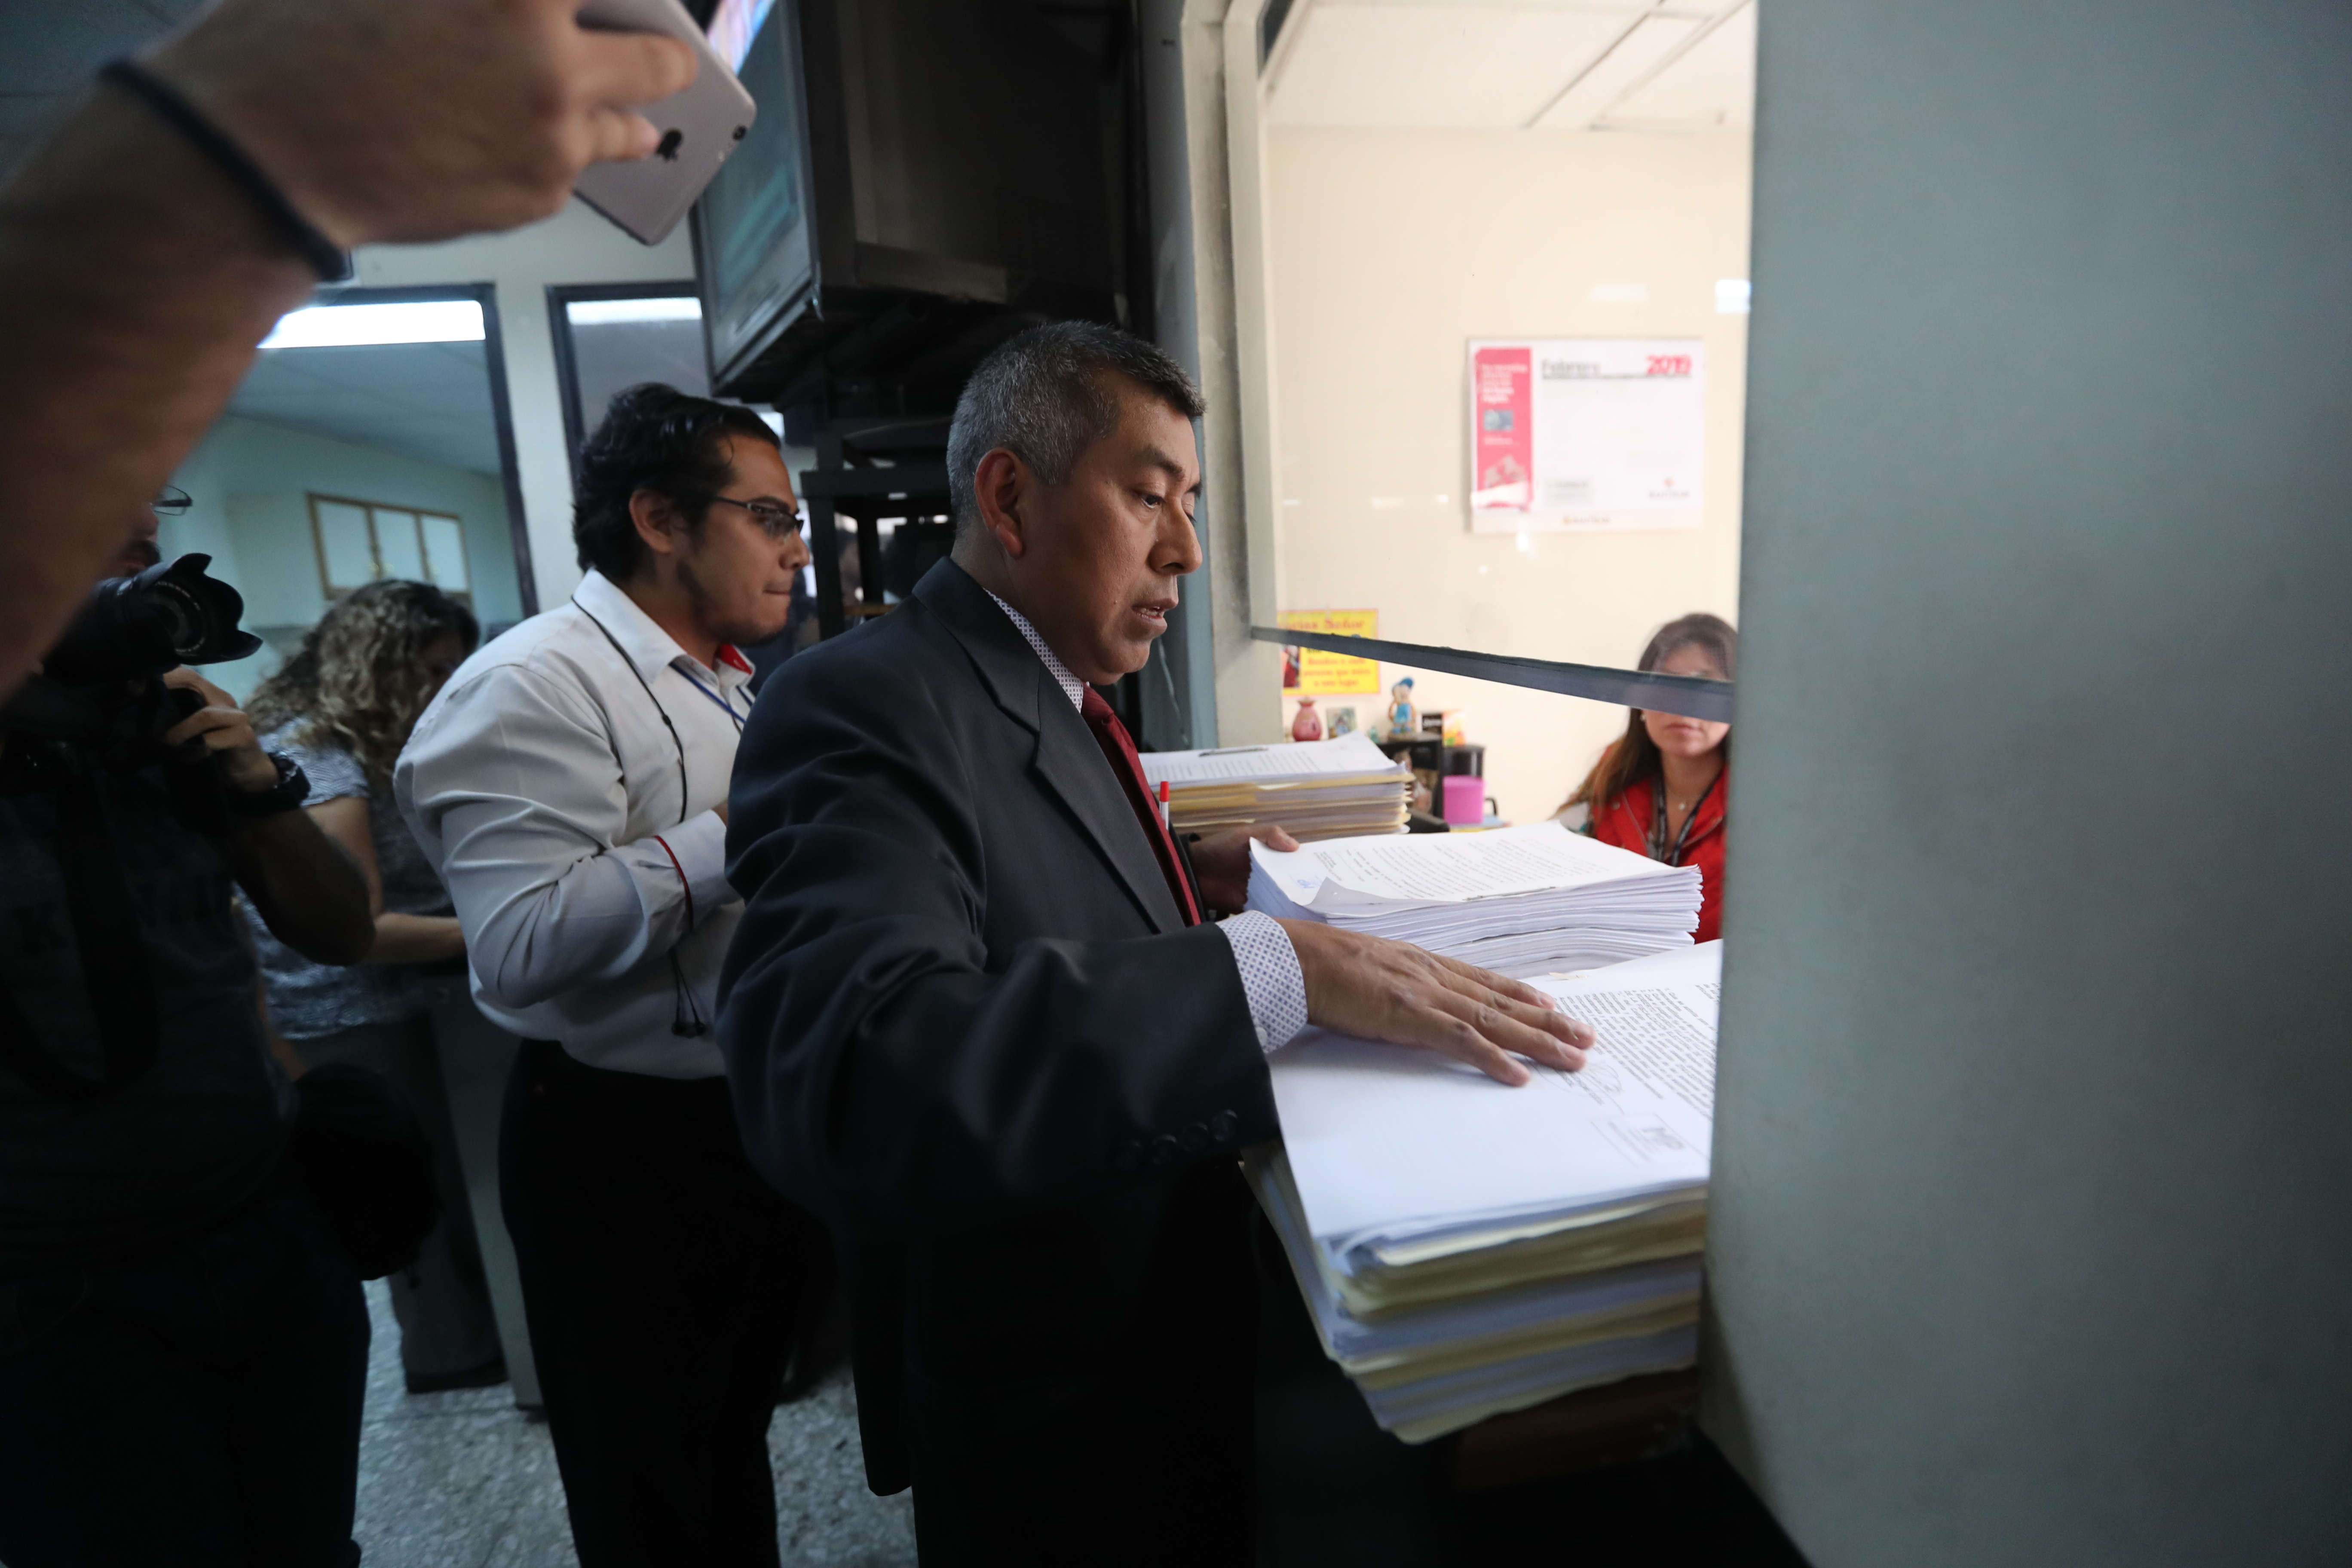 El fiscal Rafael Curruchice compareció a Tribunales el 2 de febrero pasado para pedir control jurisdiccional en investigaciones relacionadas con partidos políticos. (Foto Prensa Libre: Hemeroteca PL)